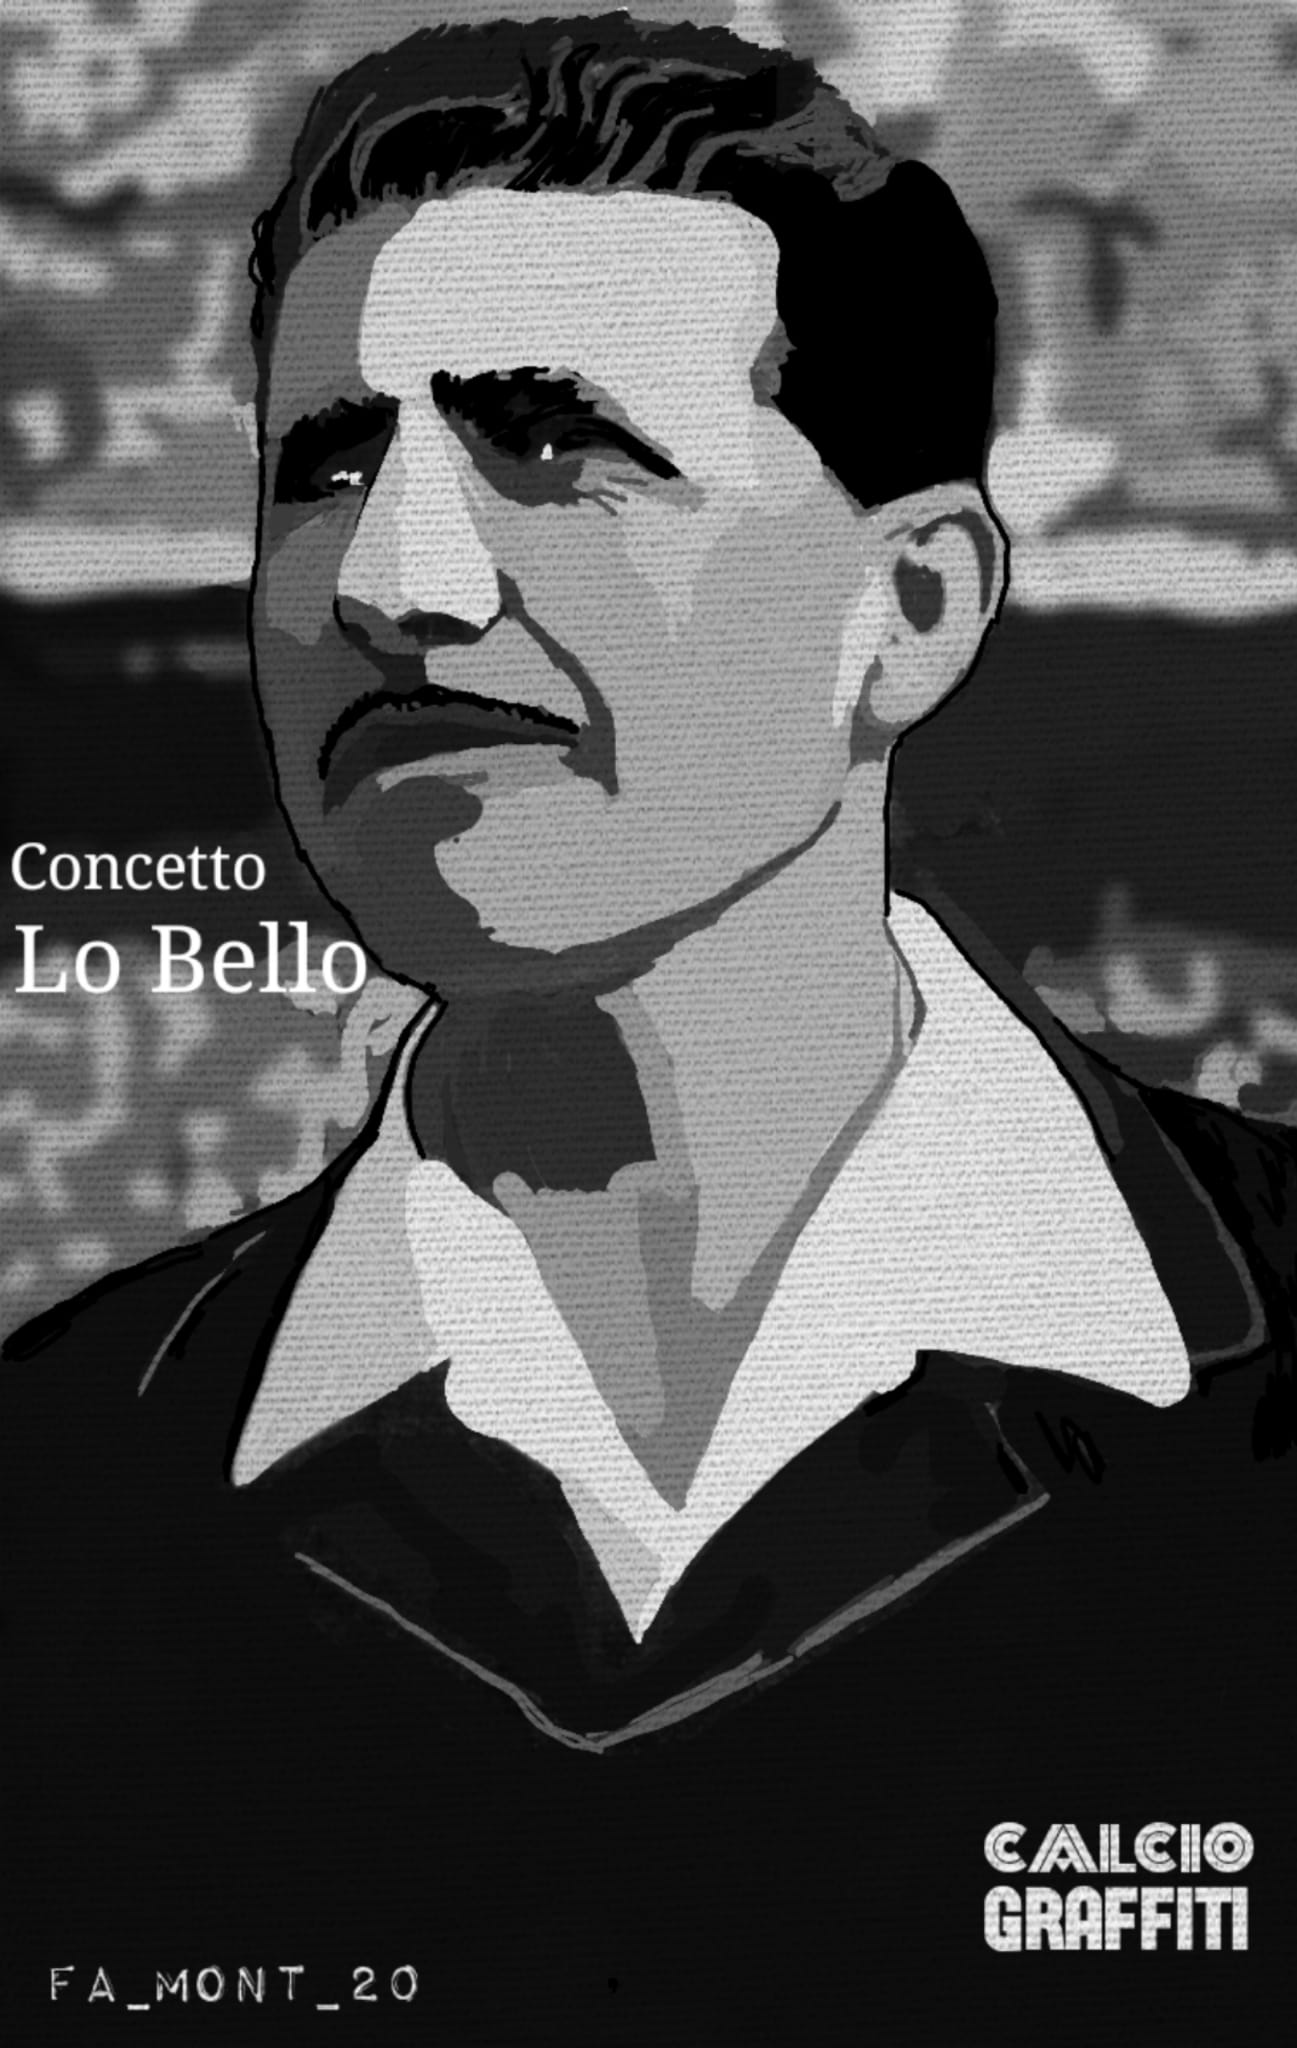 CONCETTO LO BELLO